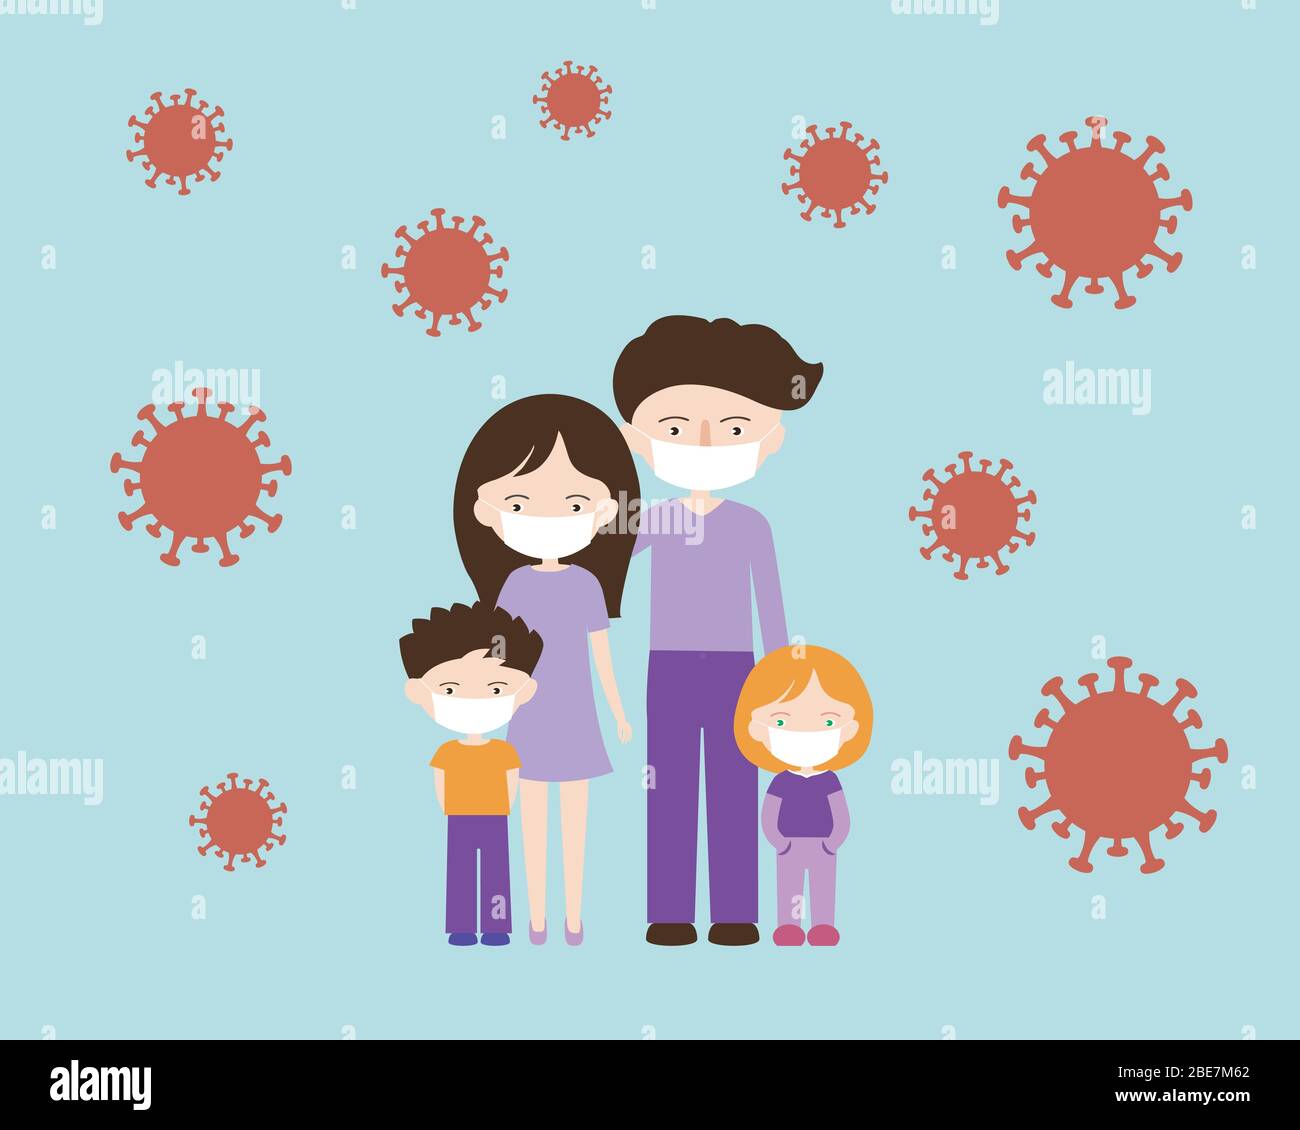 Einfache Cartoon flache Design-Illustration der Familie mit Papa, Mama und zwei Kinder. Trägt Gesichtsmasken aufgrund von Coronavirus Covid-19 Pandemie - Vektor Stock Vektor